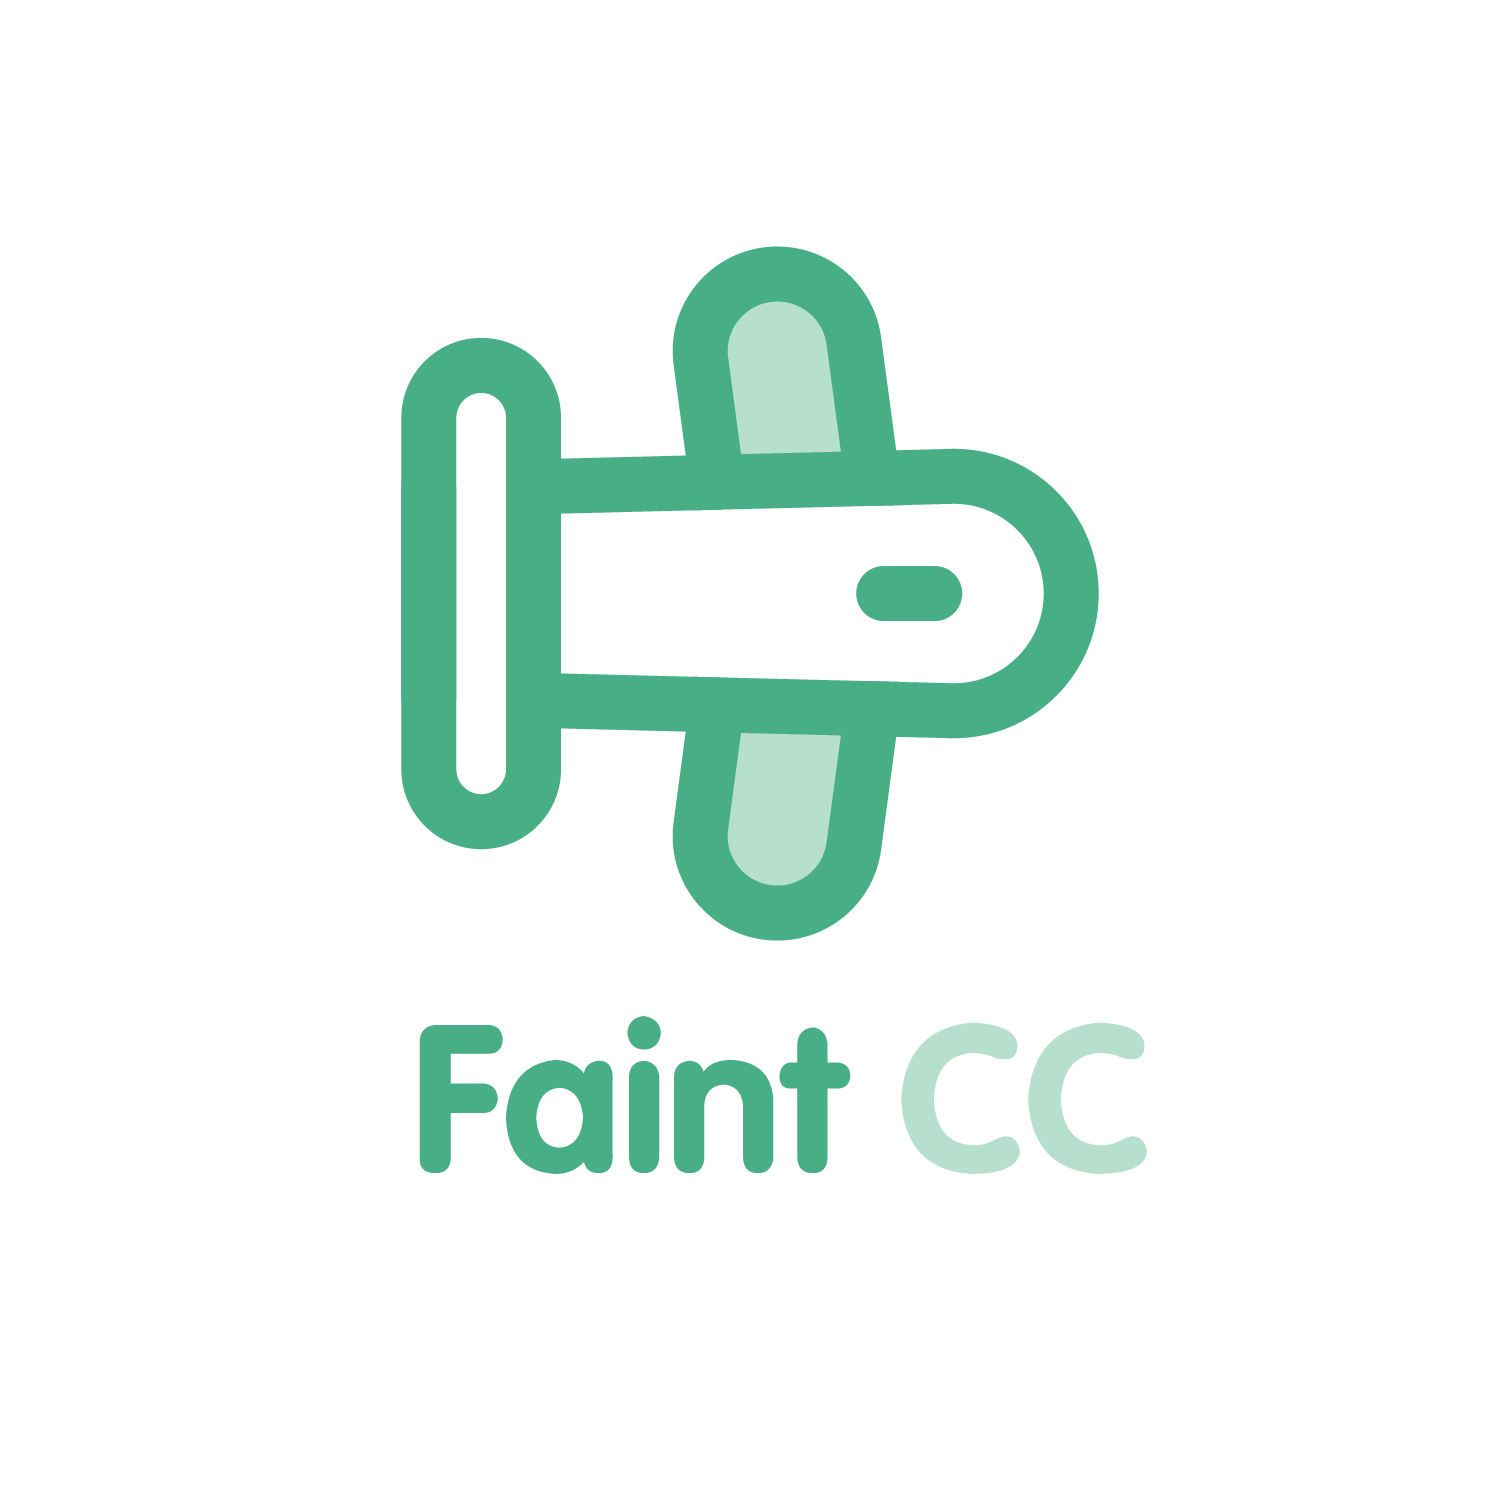 Faint CC（控制中心） - 1.12